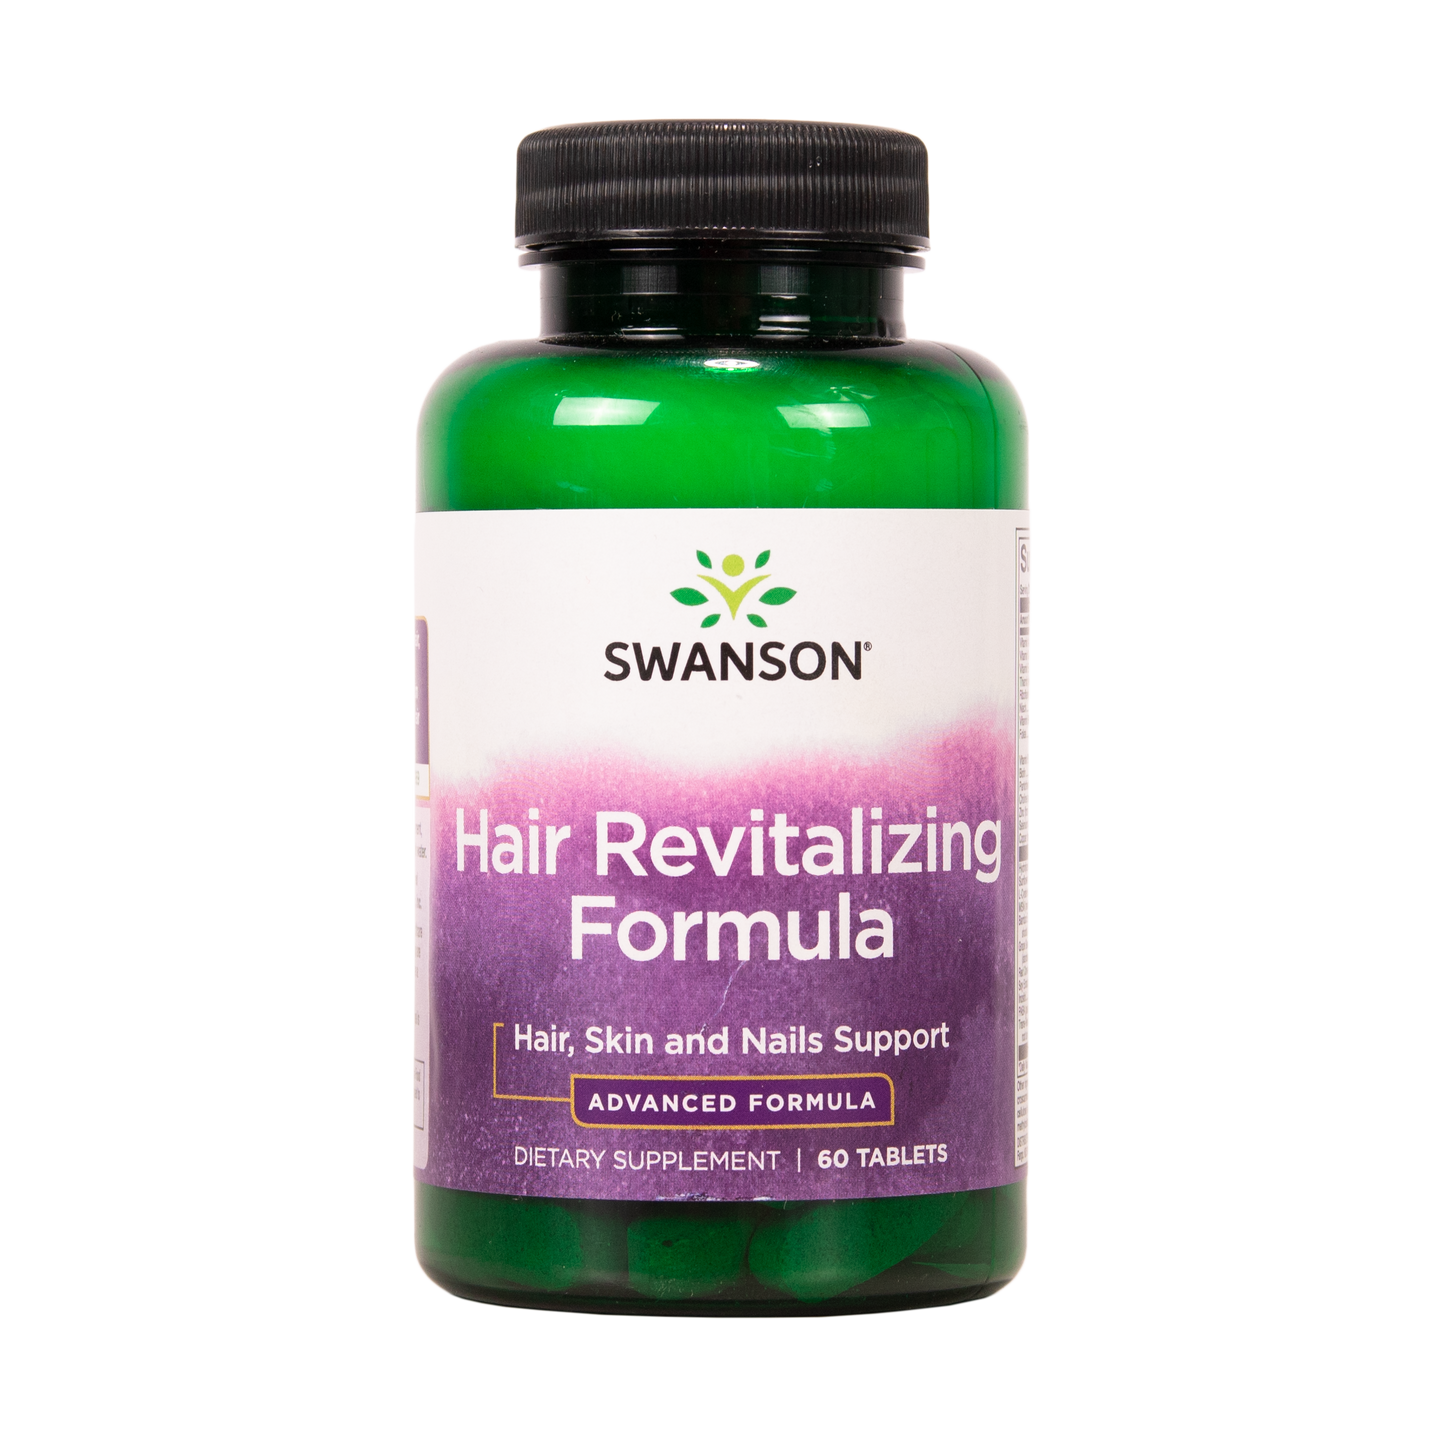 SWANSON Tehoravinne hiuksille 60 tablettia w2w terveys ja hyvinvointi verkkokauppa